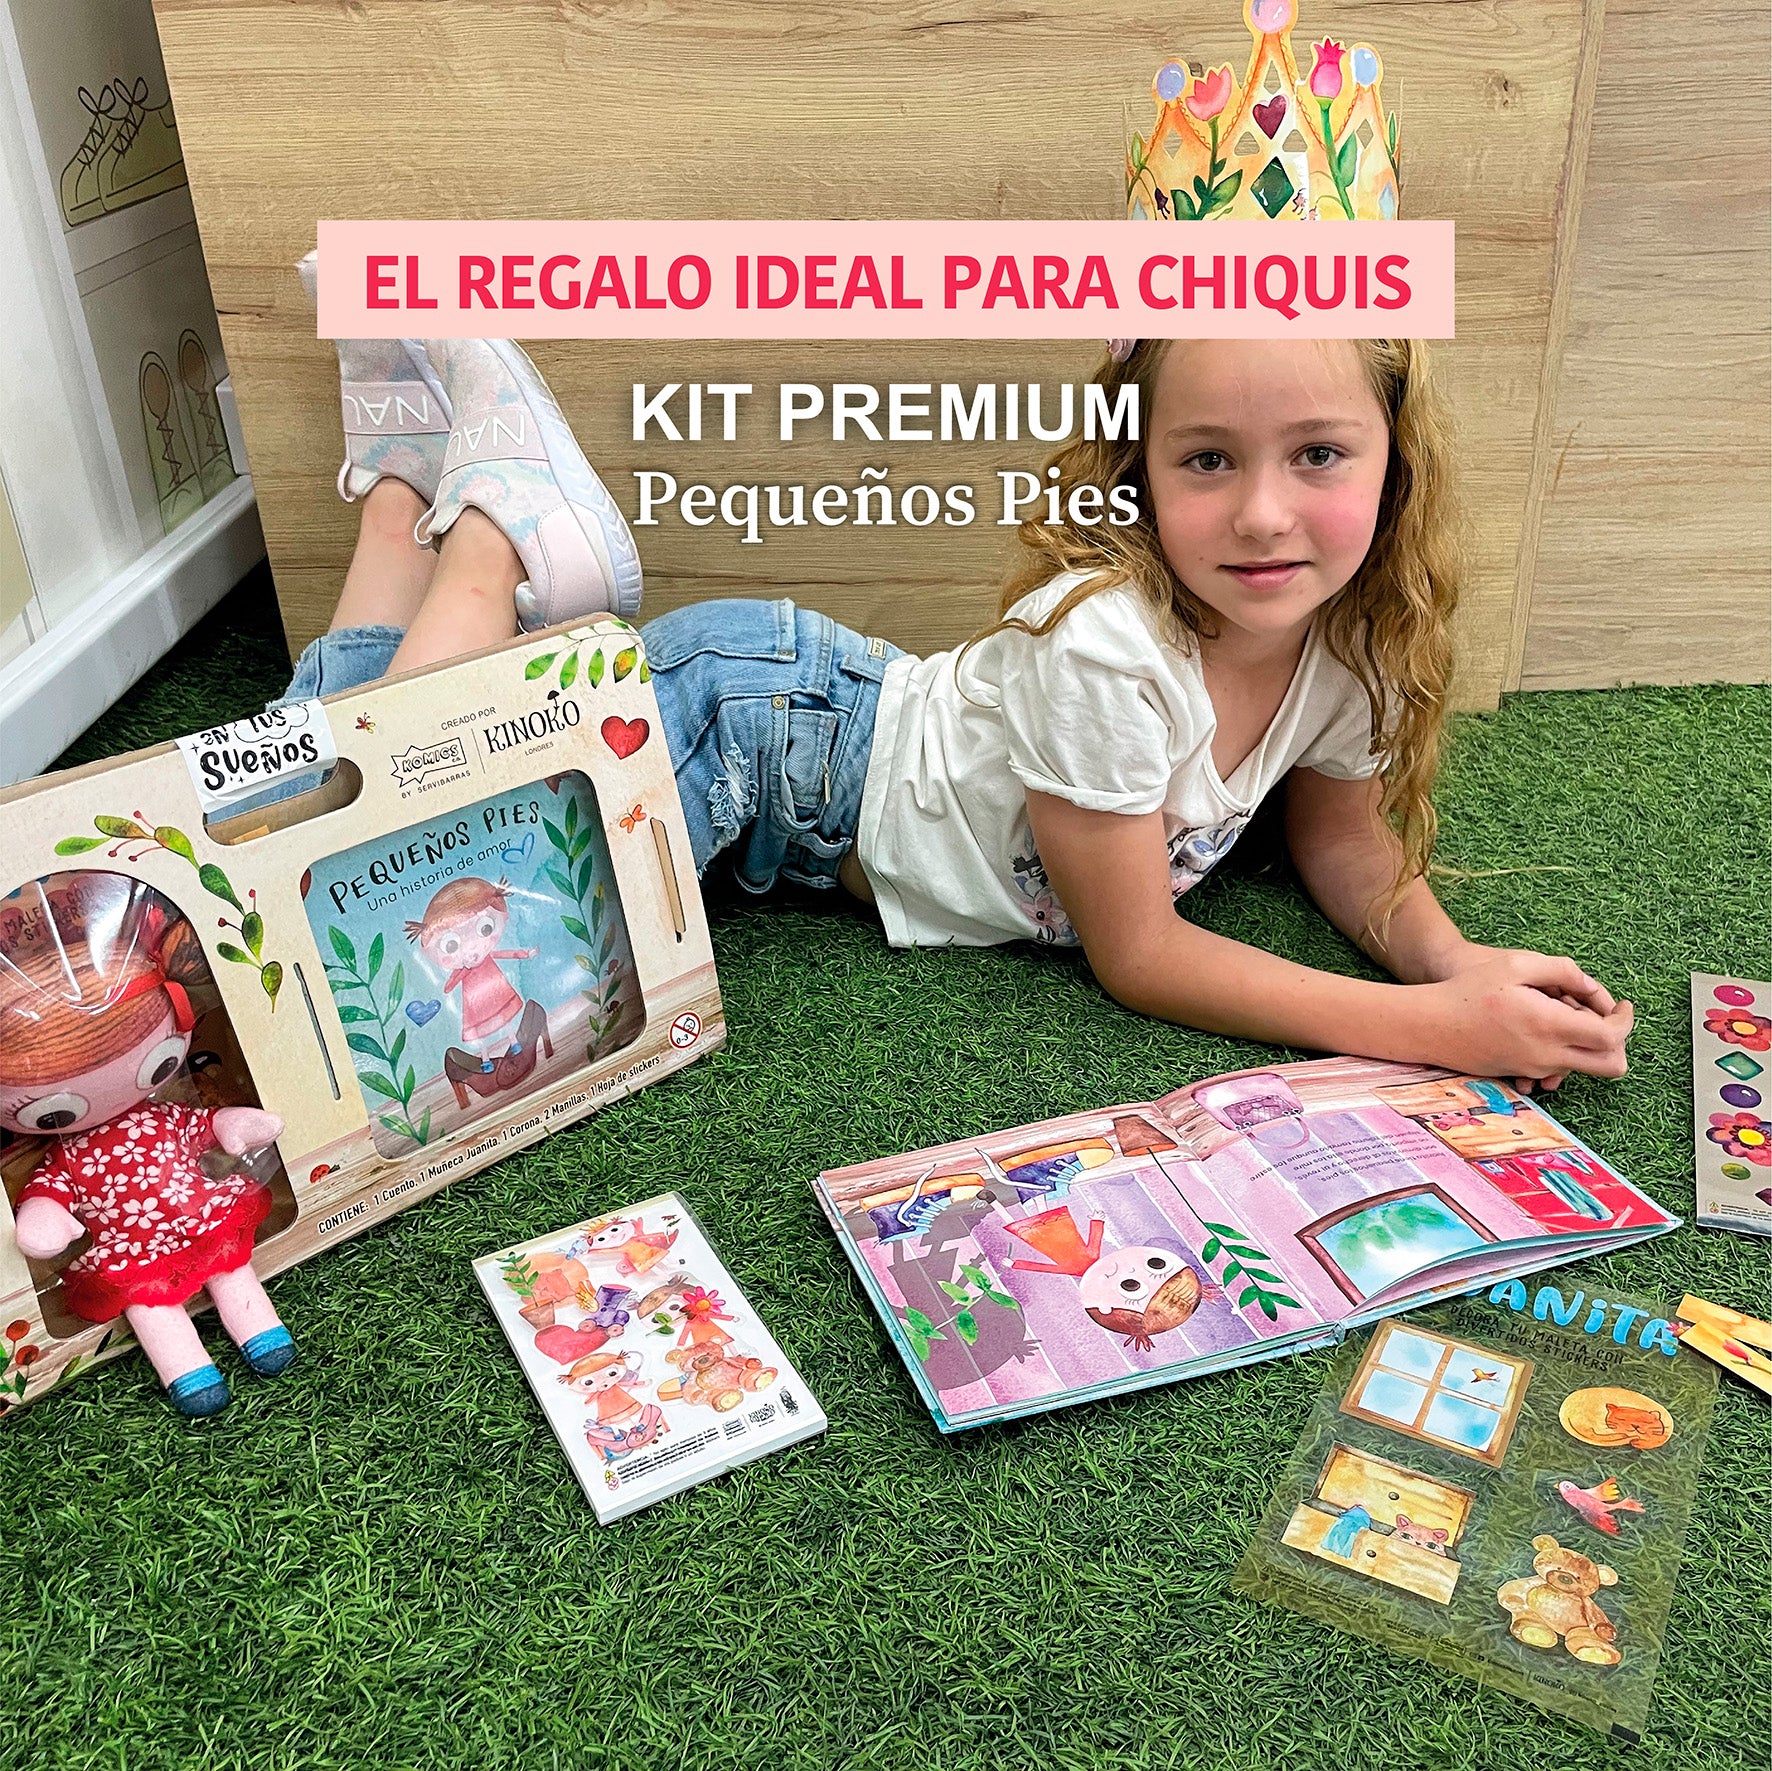 Kit Premium Pequeños Pies